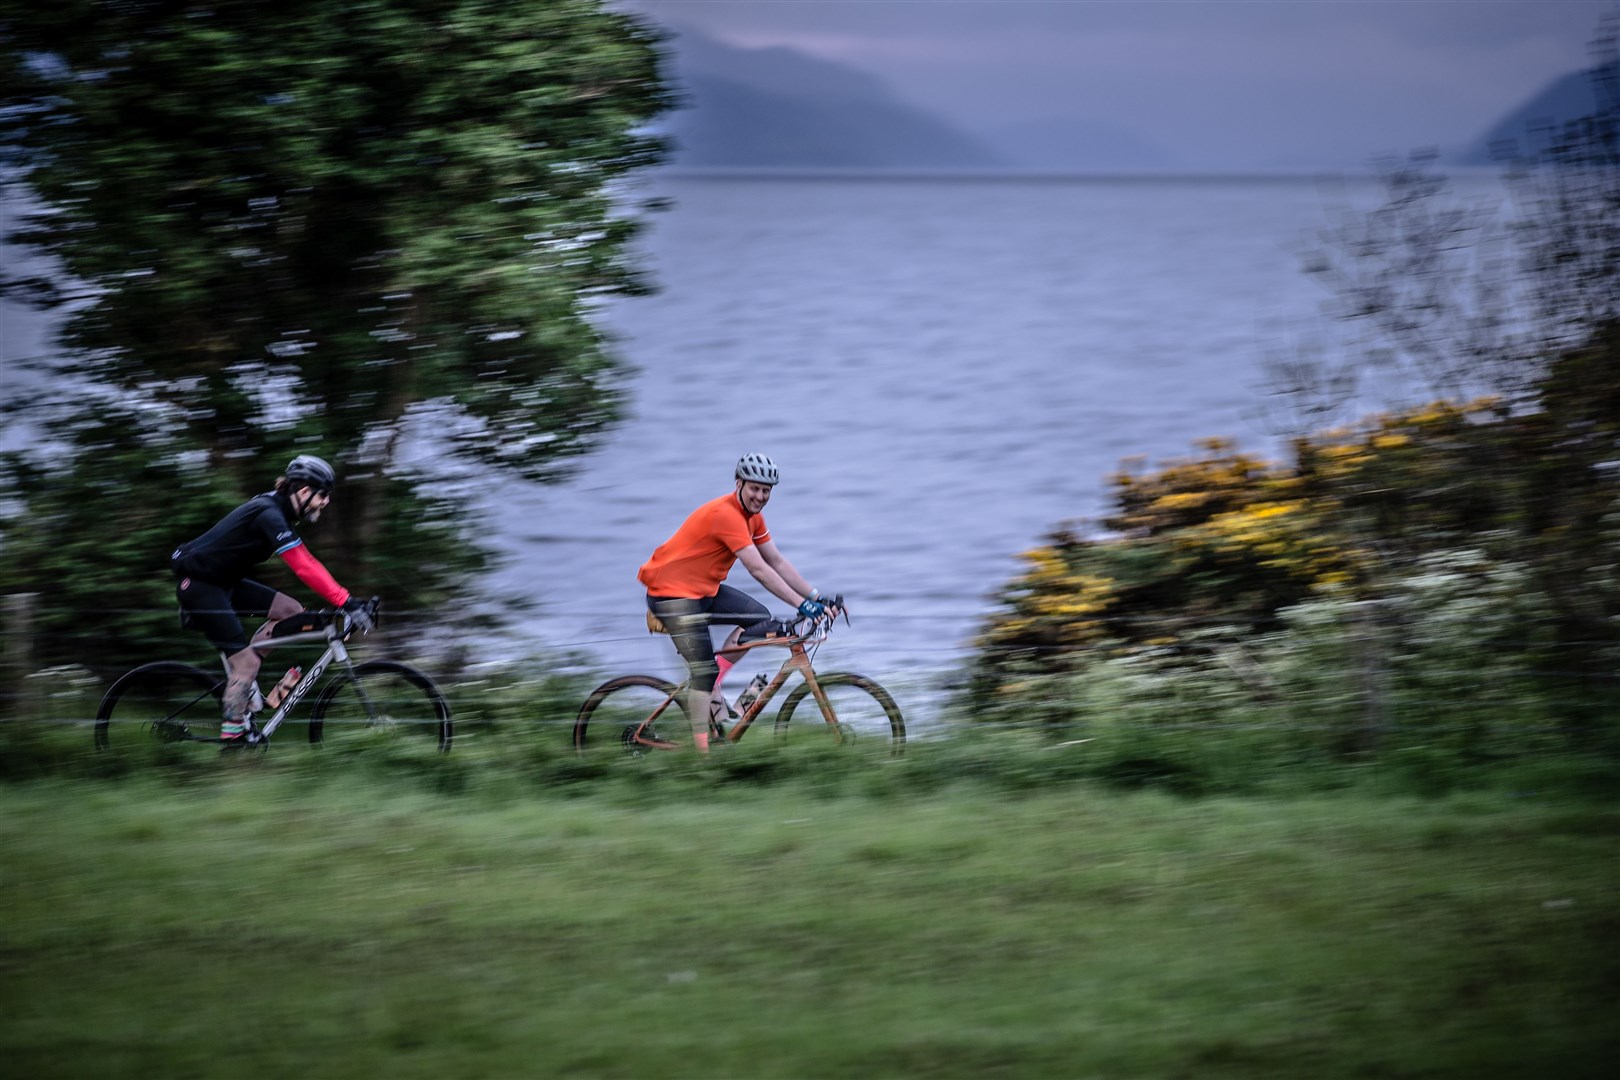 Cyclists enjoy the scenery around Loch Ness.